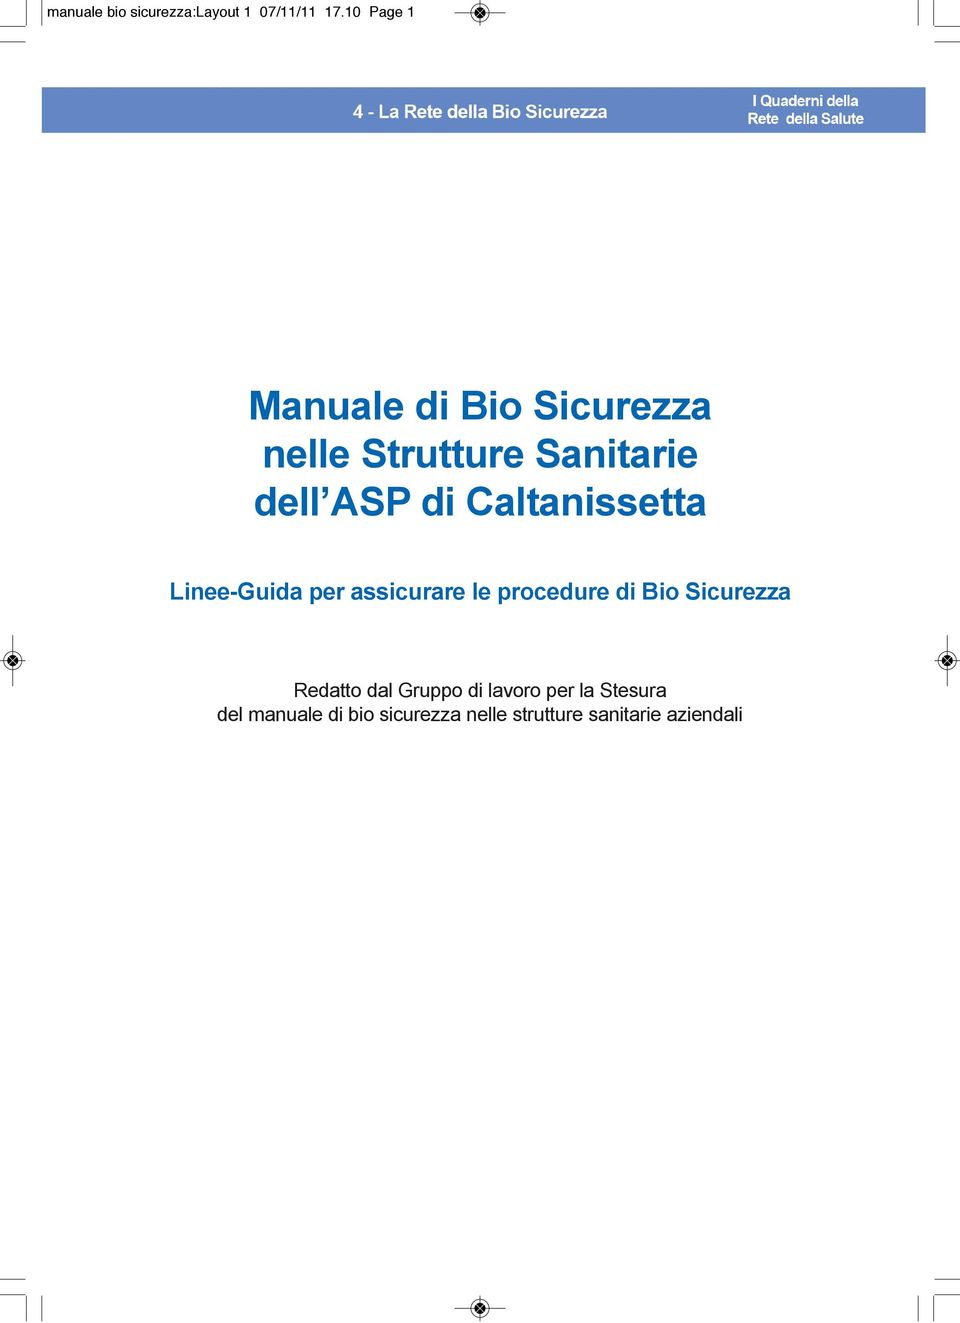 Caltanissetta Linee-Guida per assicurare le procedure di Bio Sicurezza